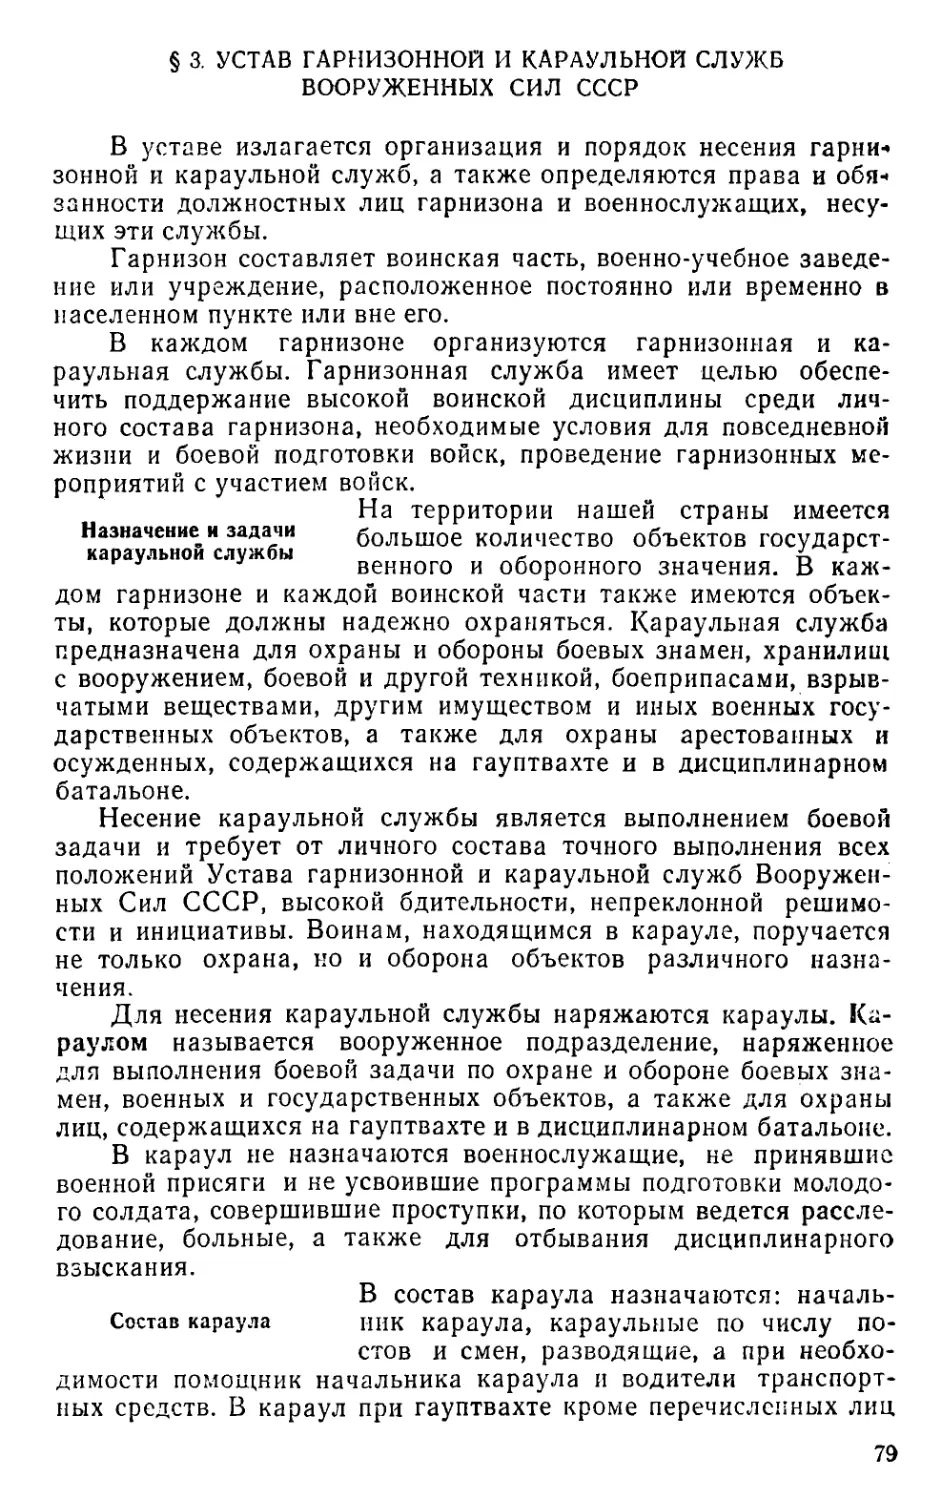 § 3. Устав гарнизонной и караульной служб Вооруженных Сил СССР